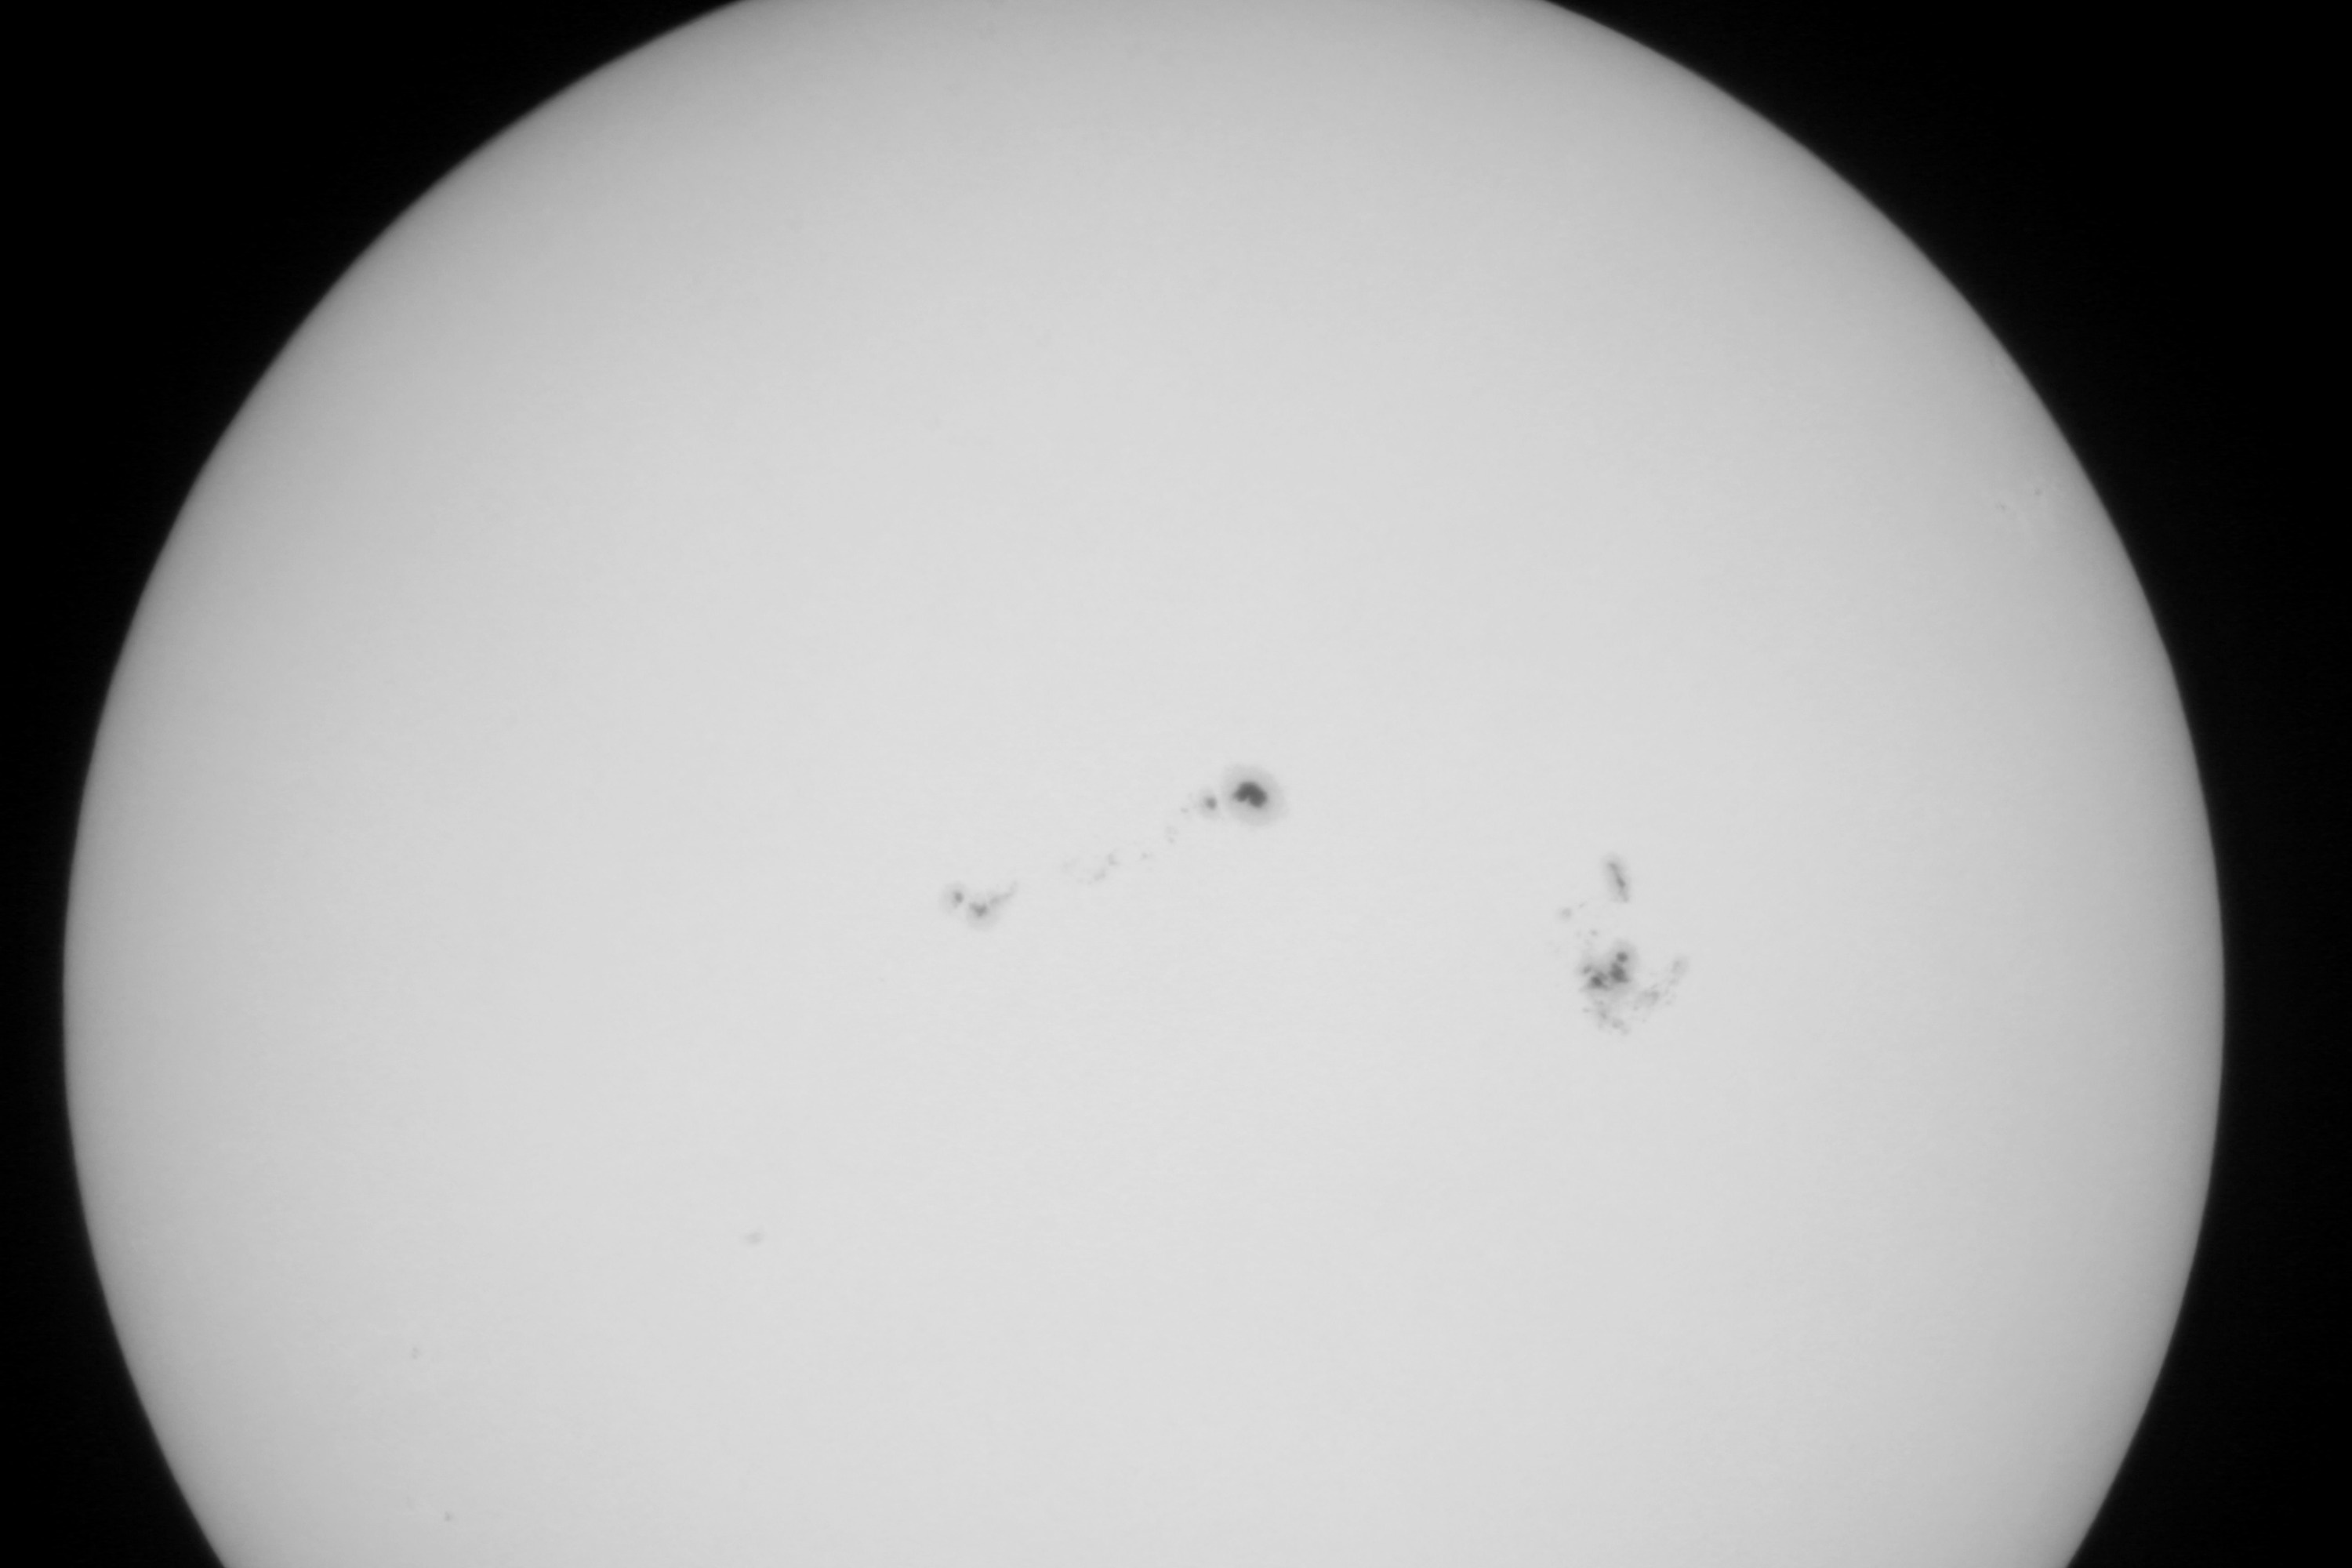 Солнце с группами пятен. Меньший телескоп